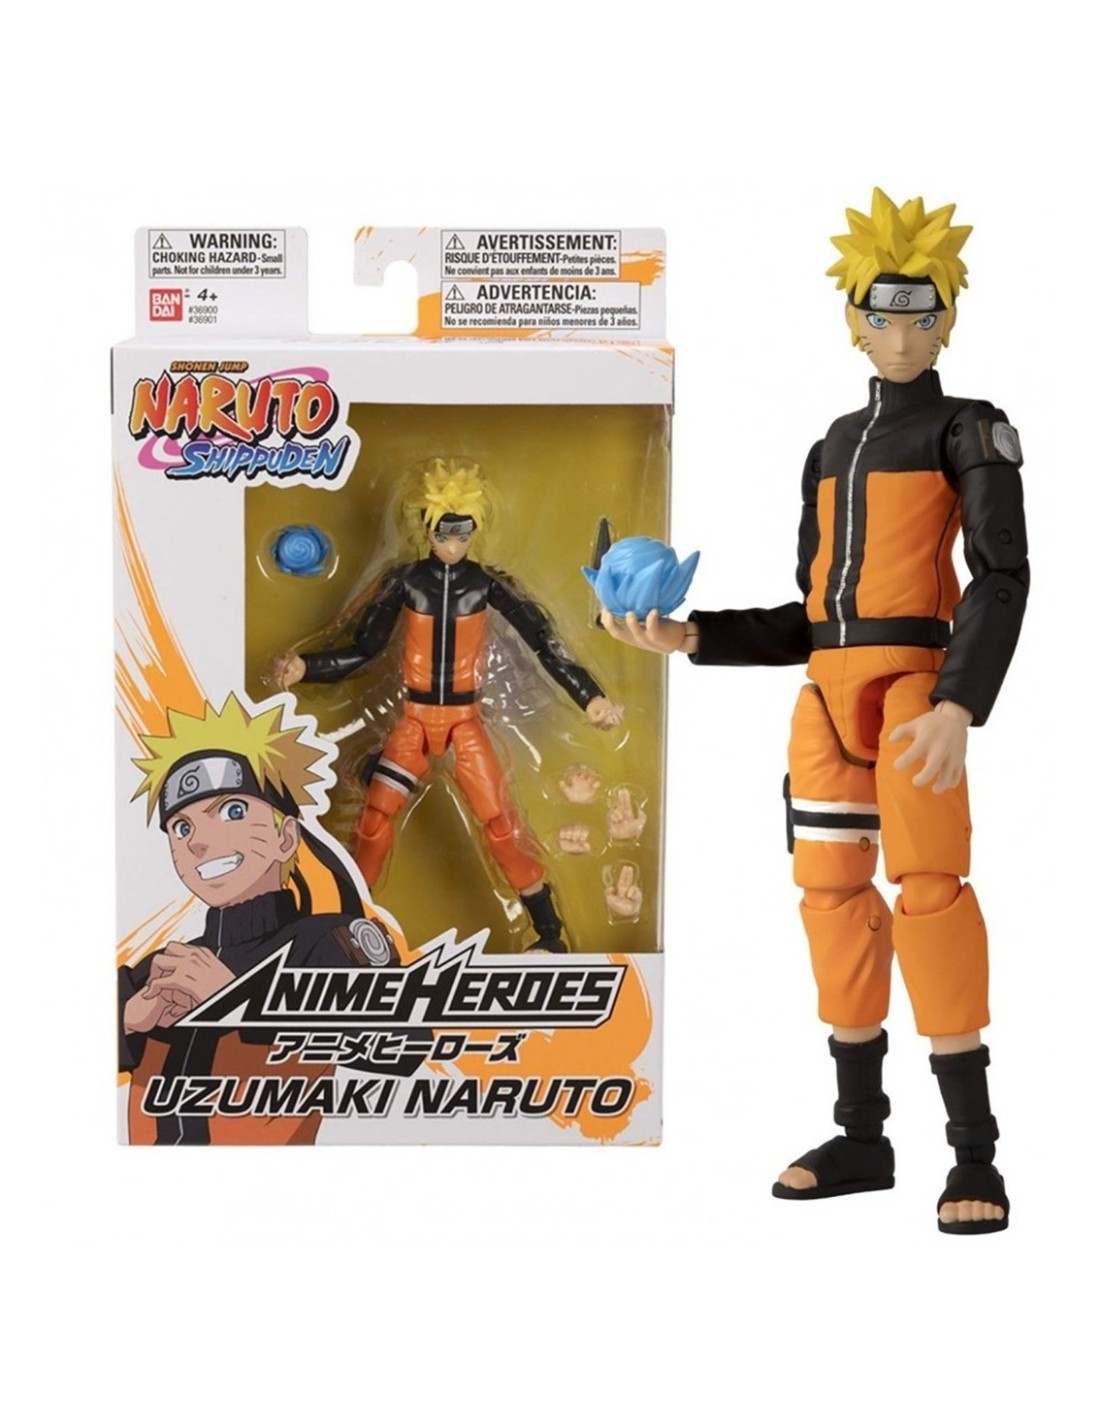 Figura Articulada Naruto Anime Heroes - Naruto Shippuden